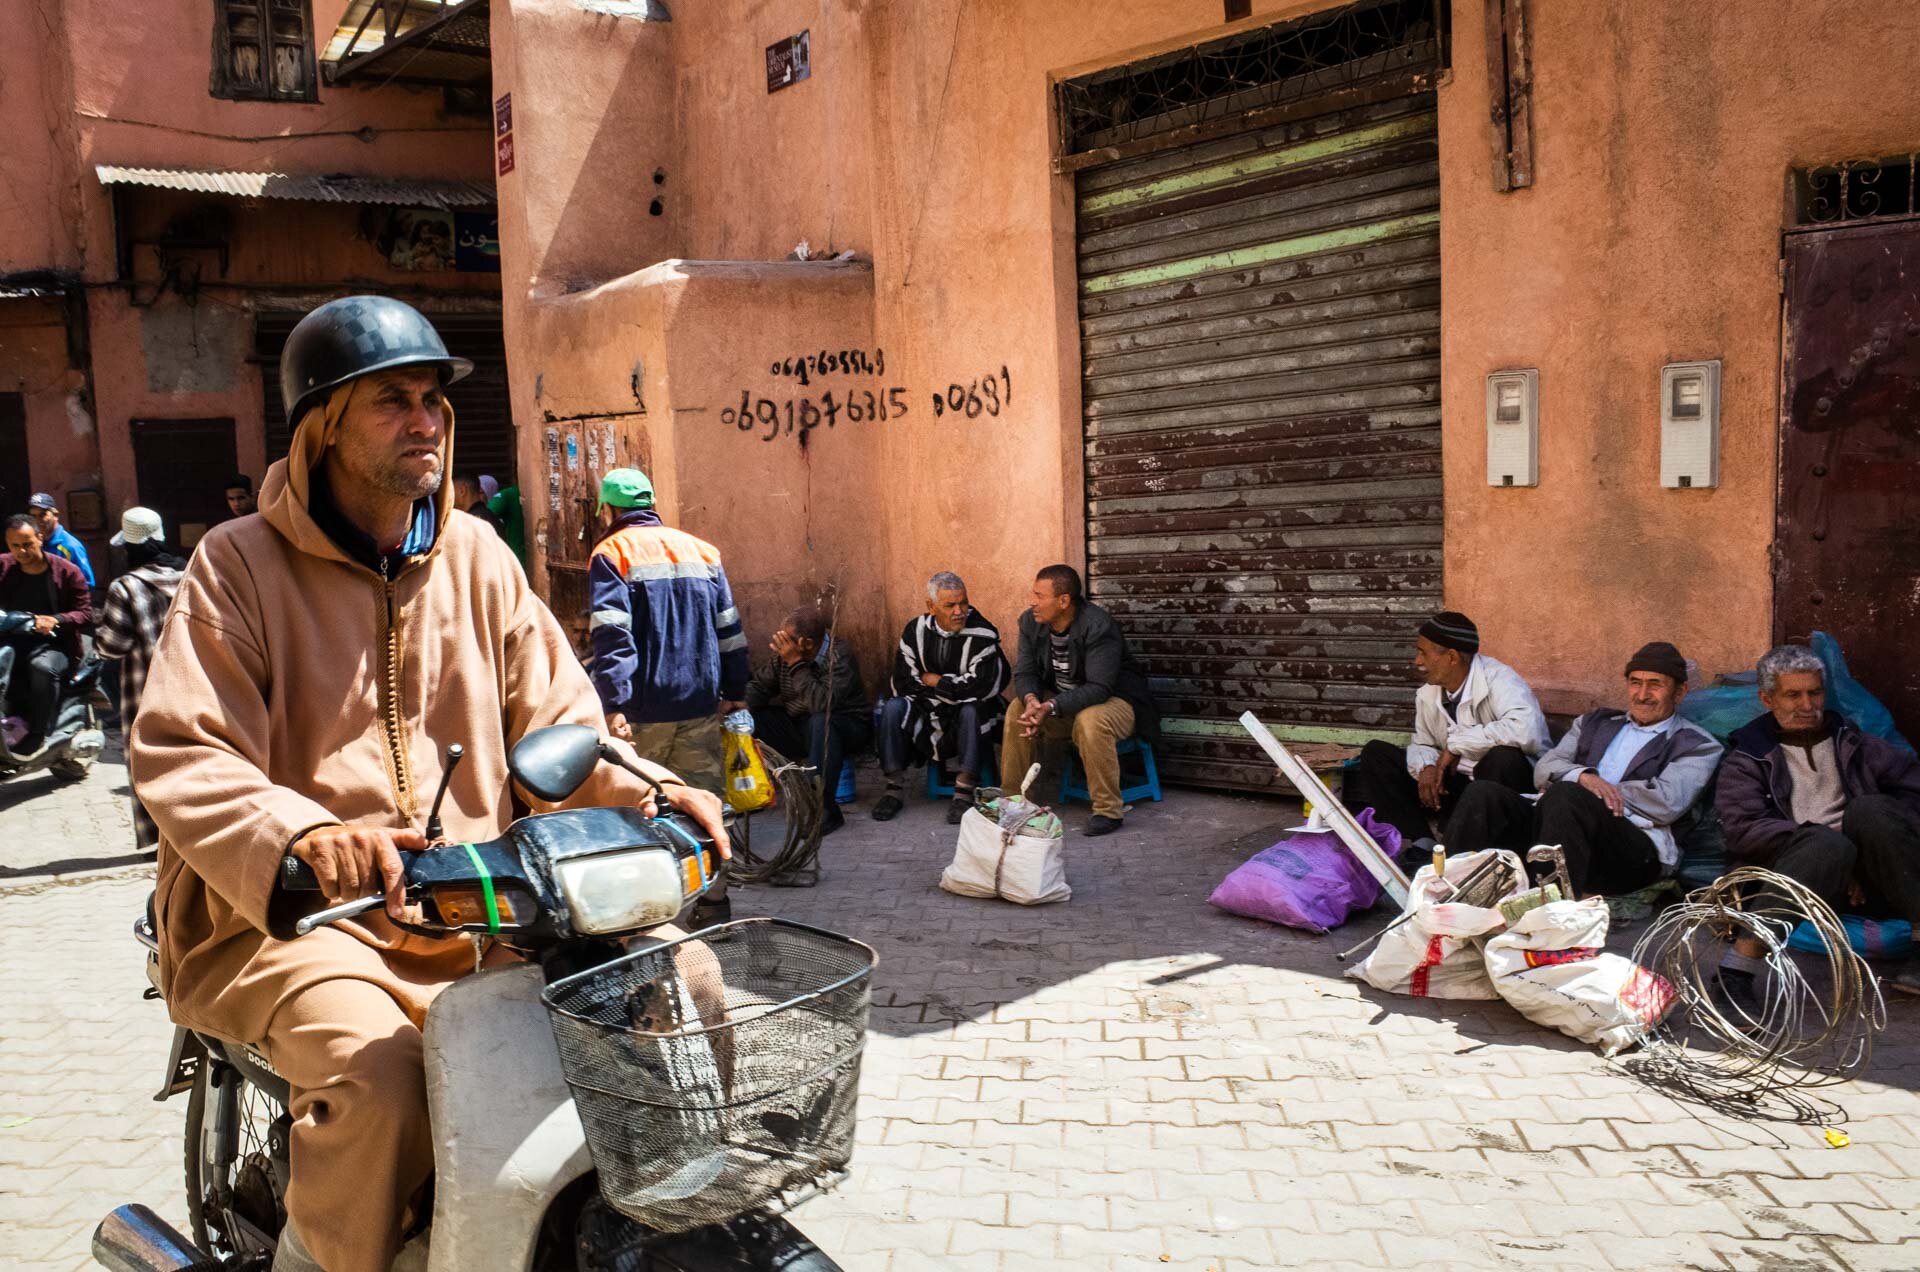 Marocco, marocco on the road, viaggio in marocco, marrakech, medina, bazar, viaggio di coppia, viaggo in marocco itinerario, marrakech marocco, marrakech riad, marrakech hotel, marrakech cosa vedere, marrakech cosa fare-42.jpg